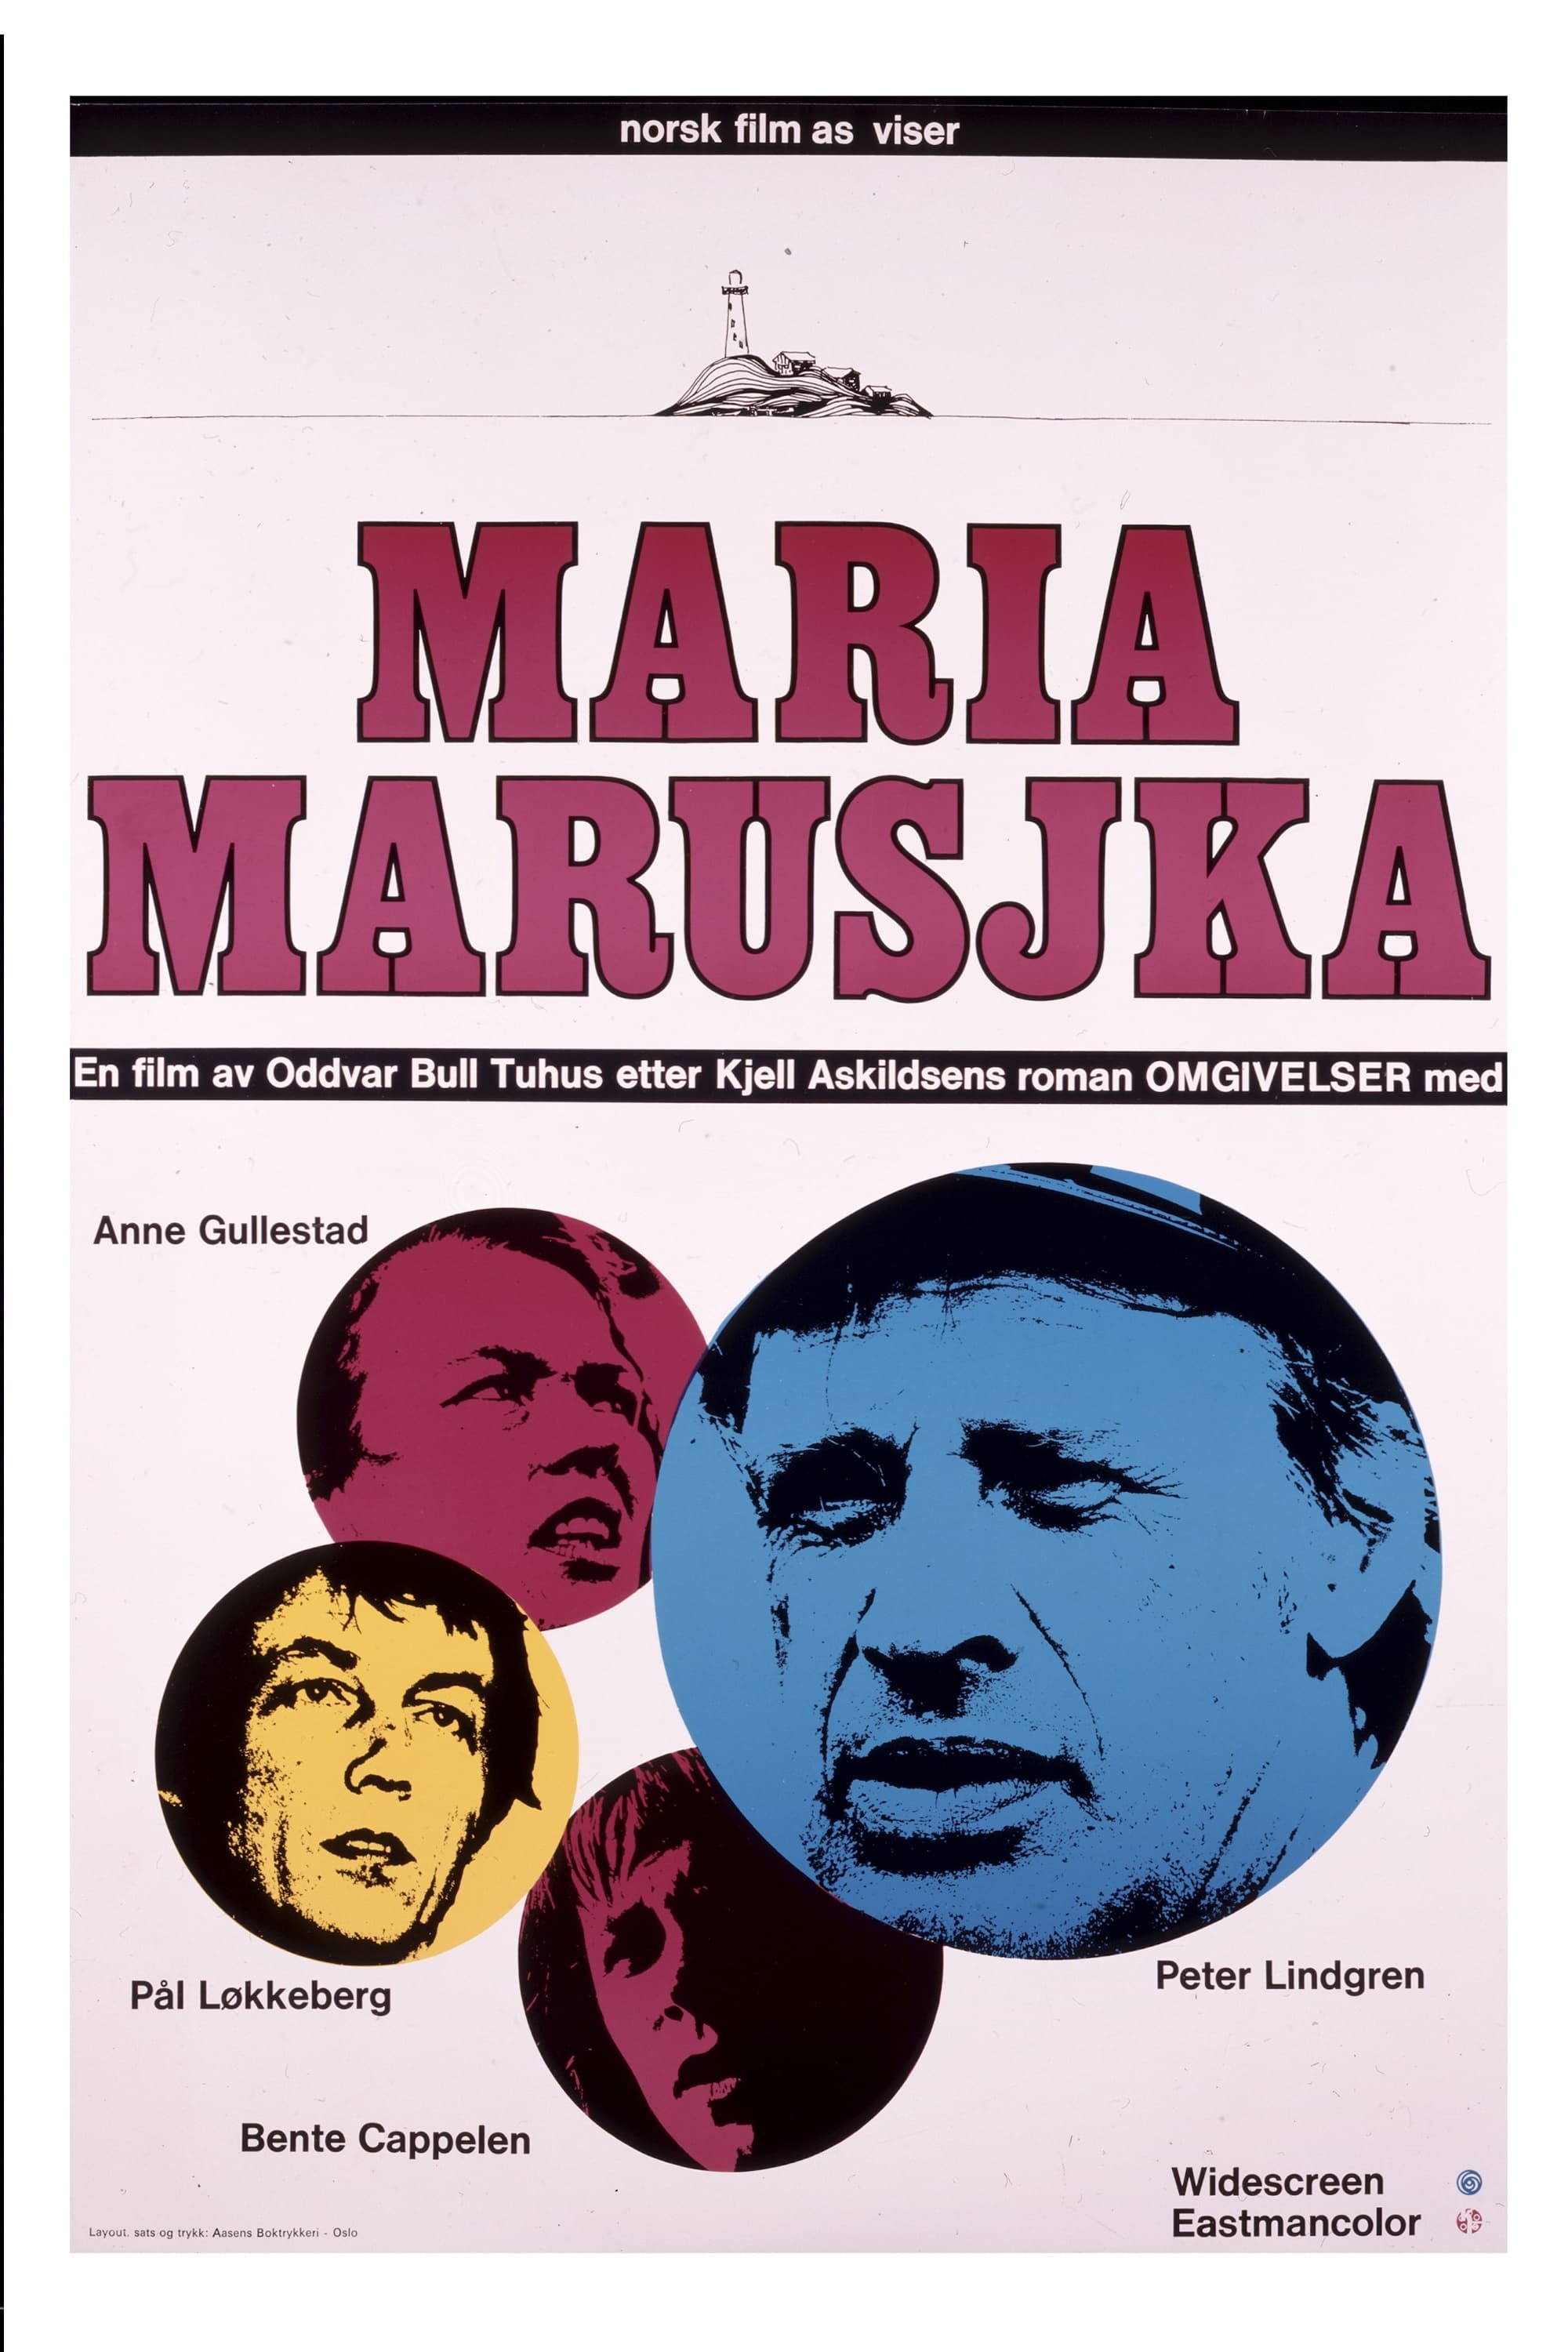 Maria Marusjka